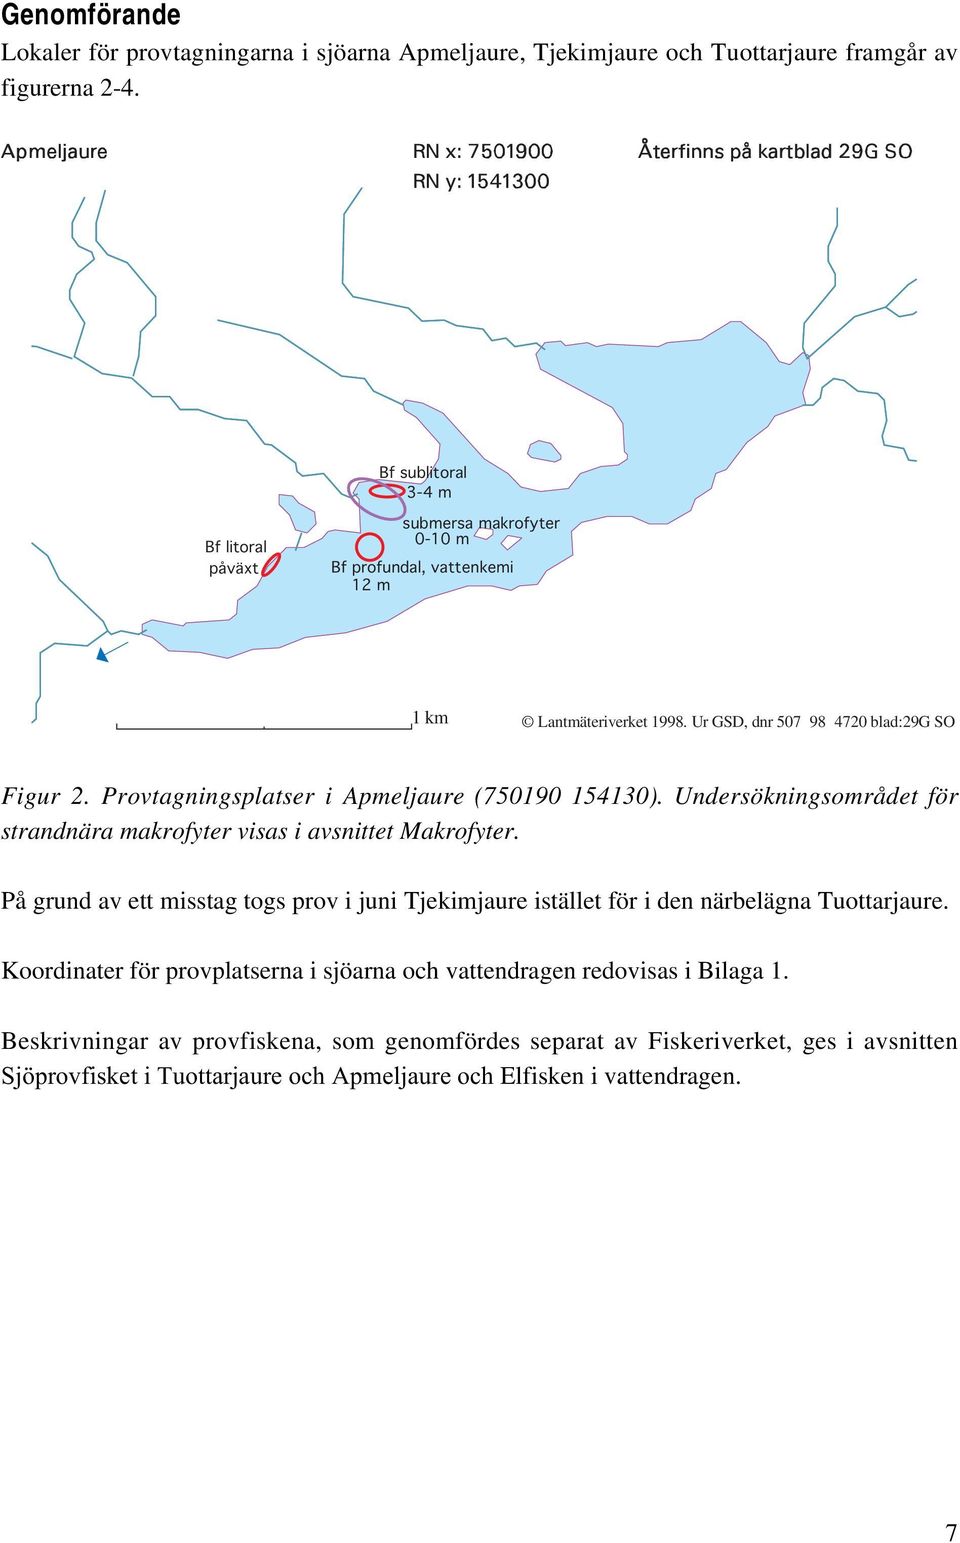 Provtagningsplatser i Apmeljaure (750190 154130). Undersökningsområdet för strandnära makrofyter visas i avsnittet Makrofyter.